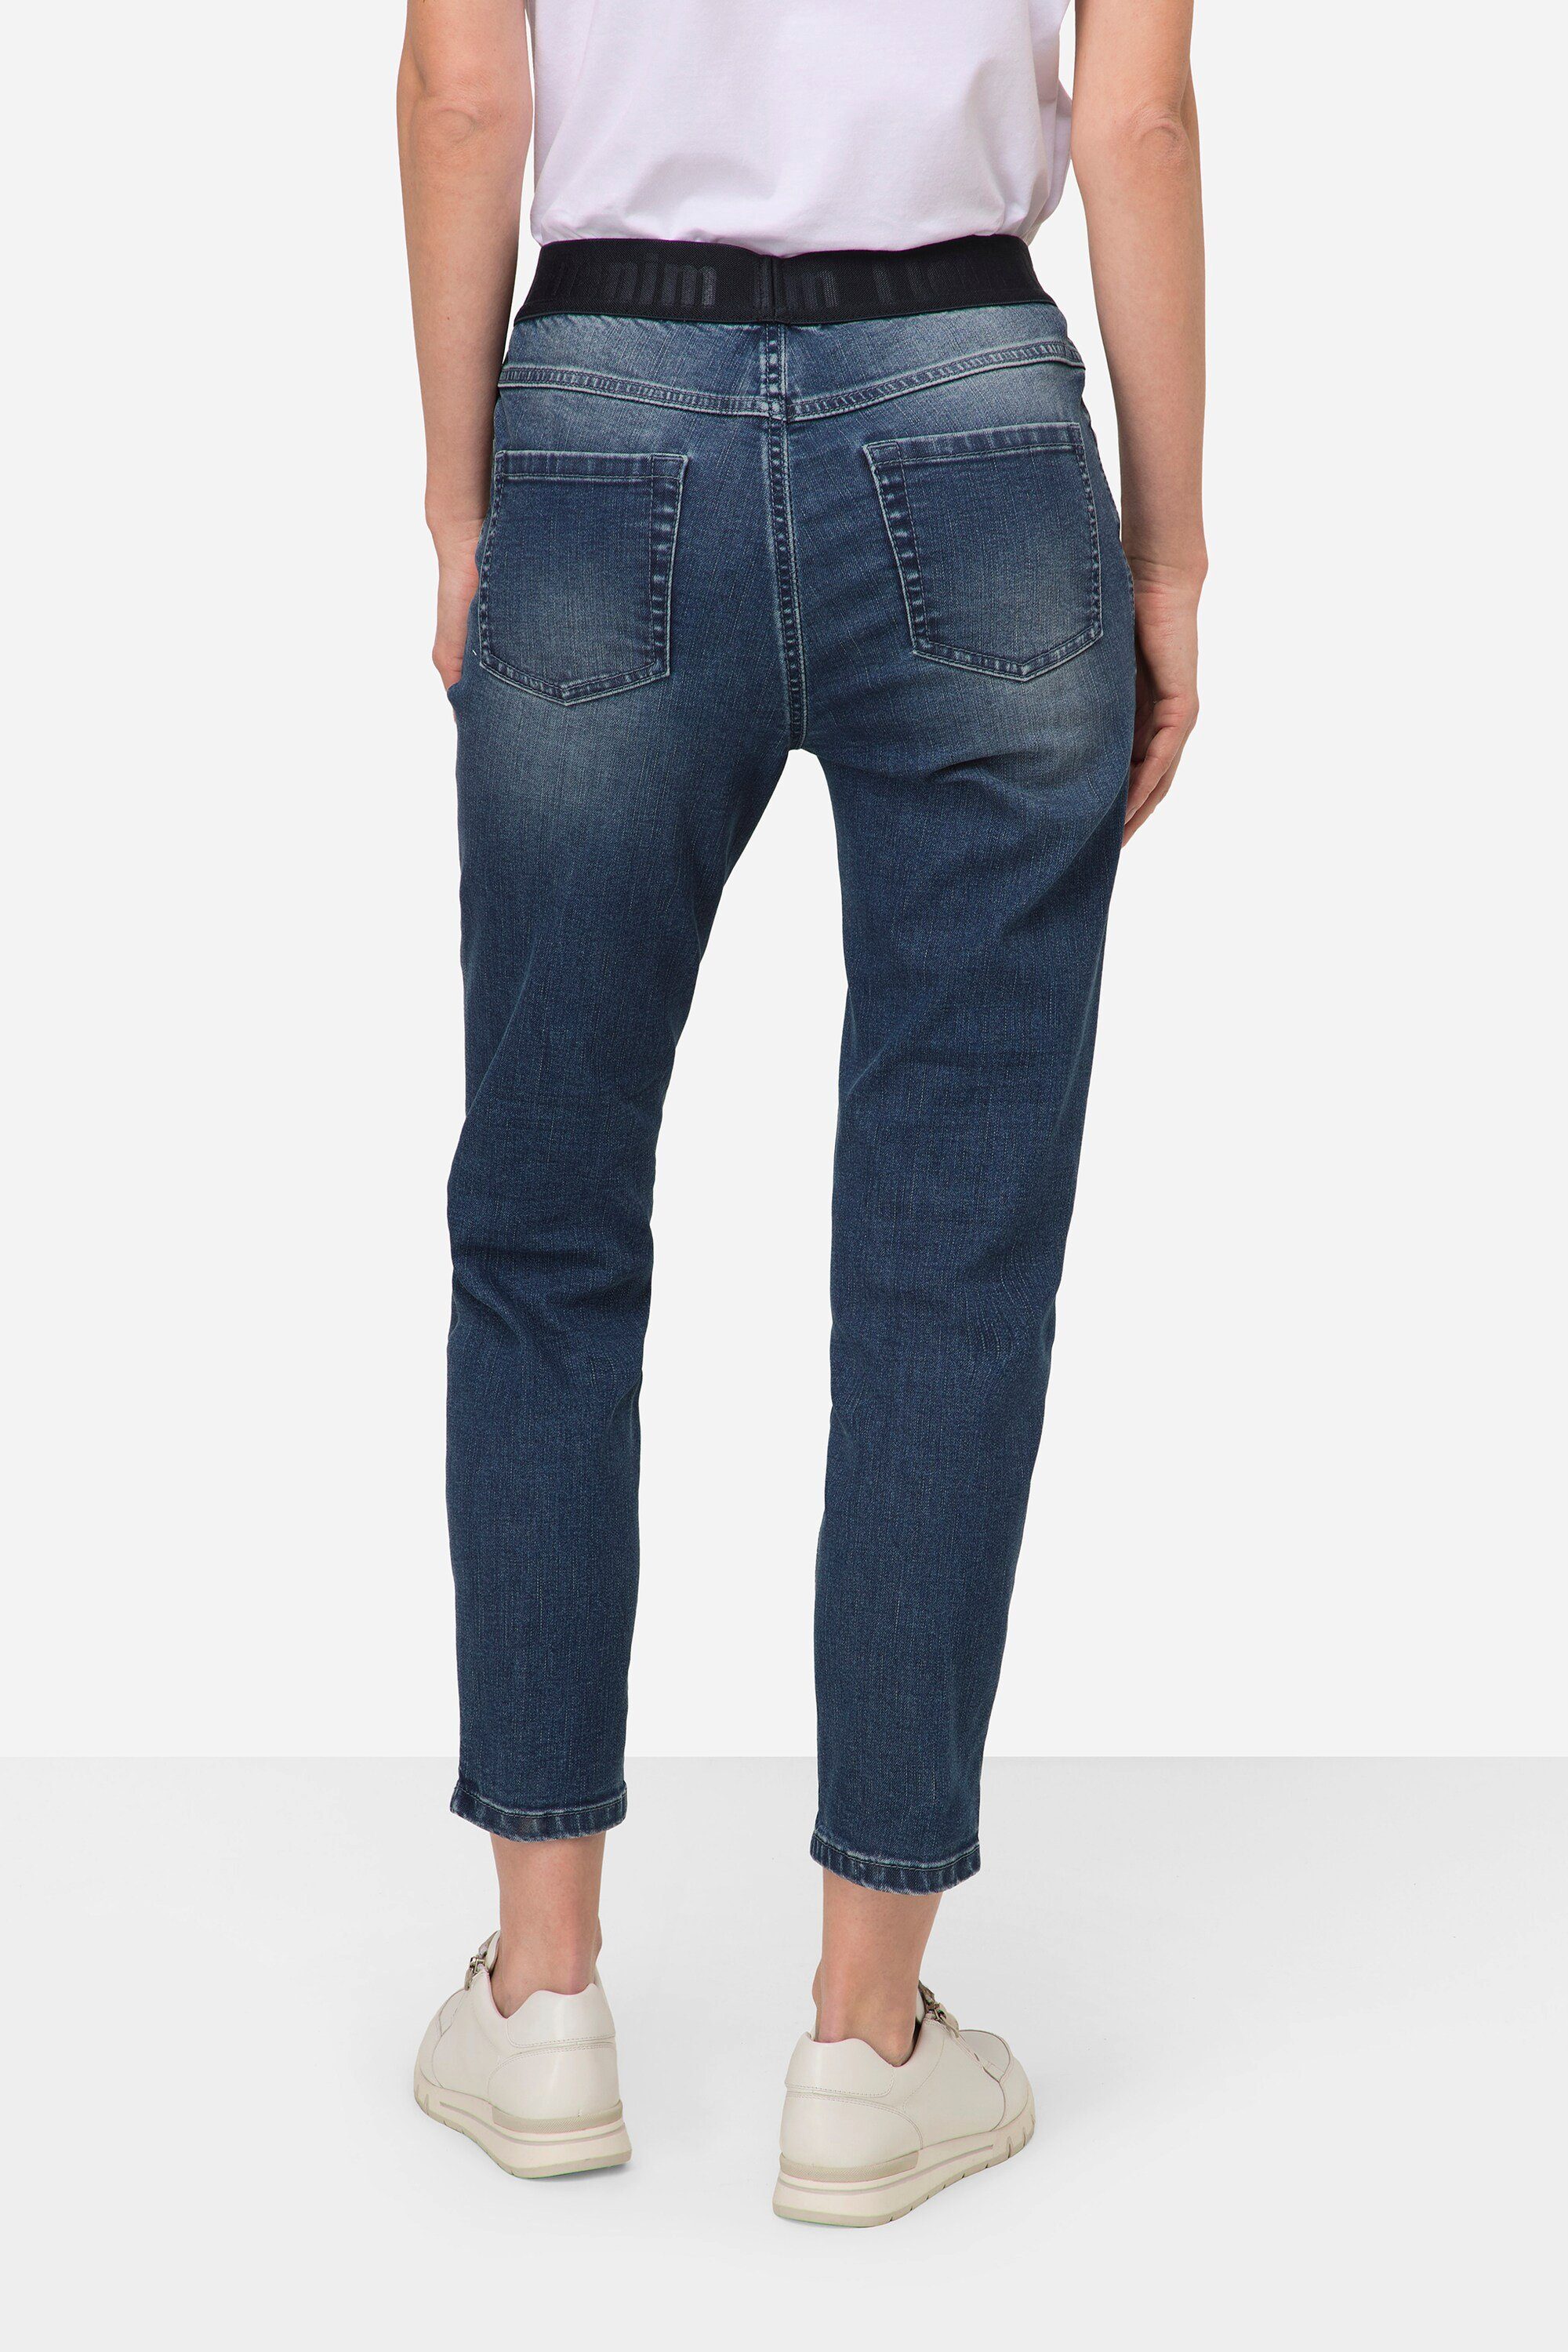 blue Pocket Regular-fit-Jeans denim 4 Laurasøn Julia Elastikbund Jeans